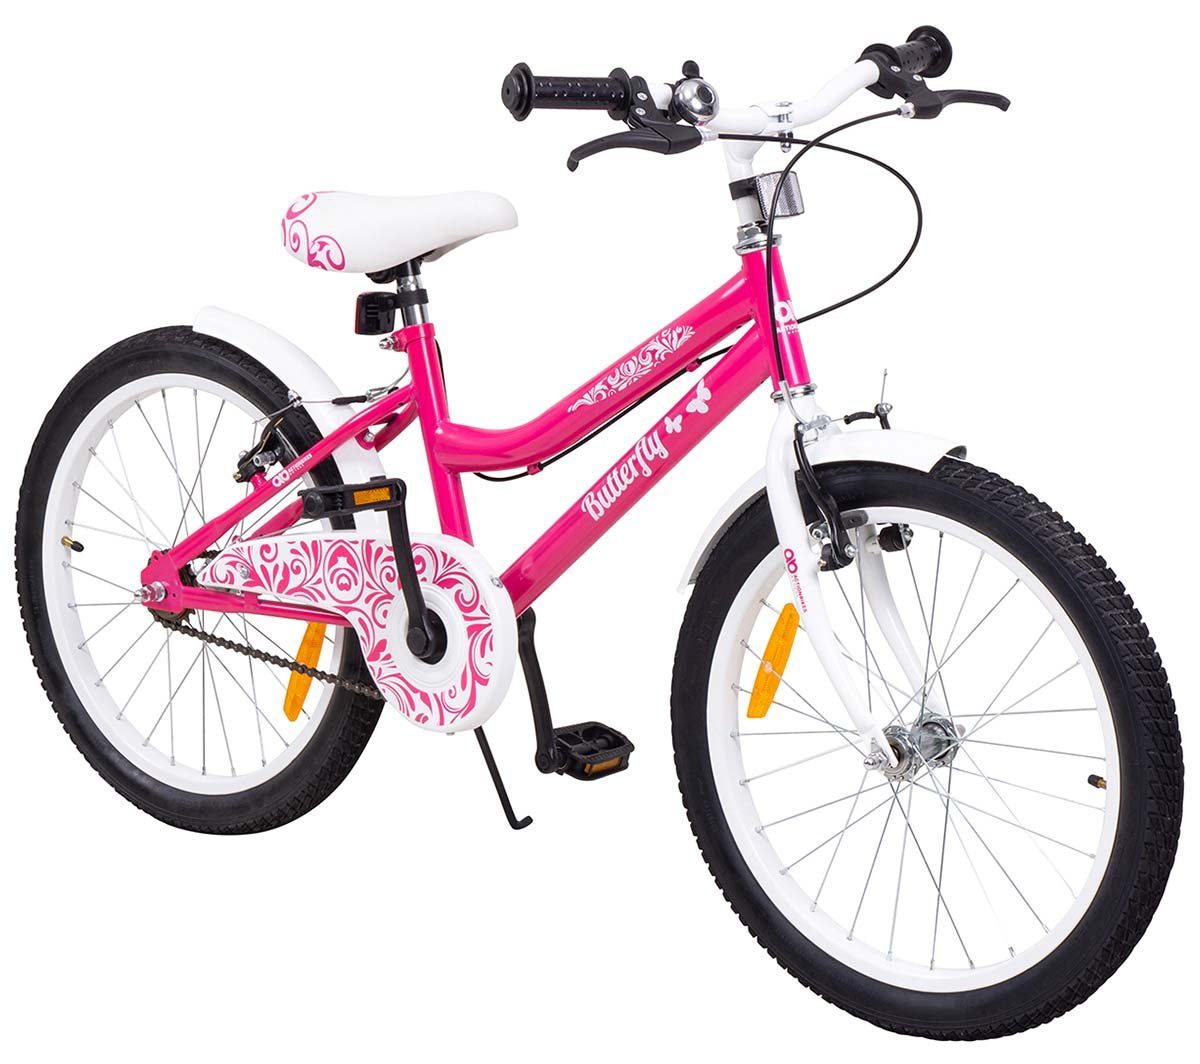 20" Kinderfahrrad Kinder Fahrrad Jugendfahrrad Mädchenfahrrad Rad Citybike Neu 